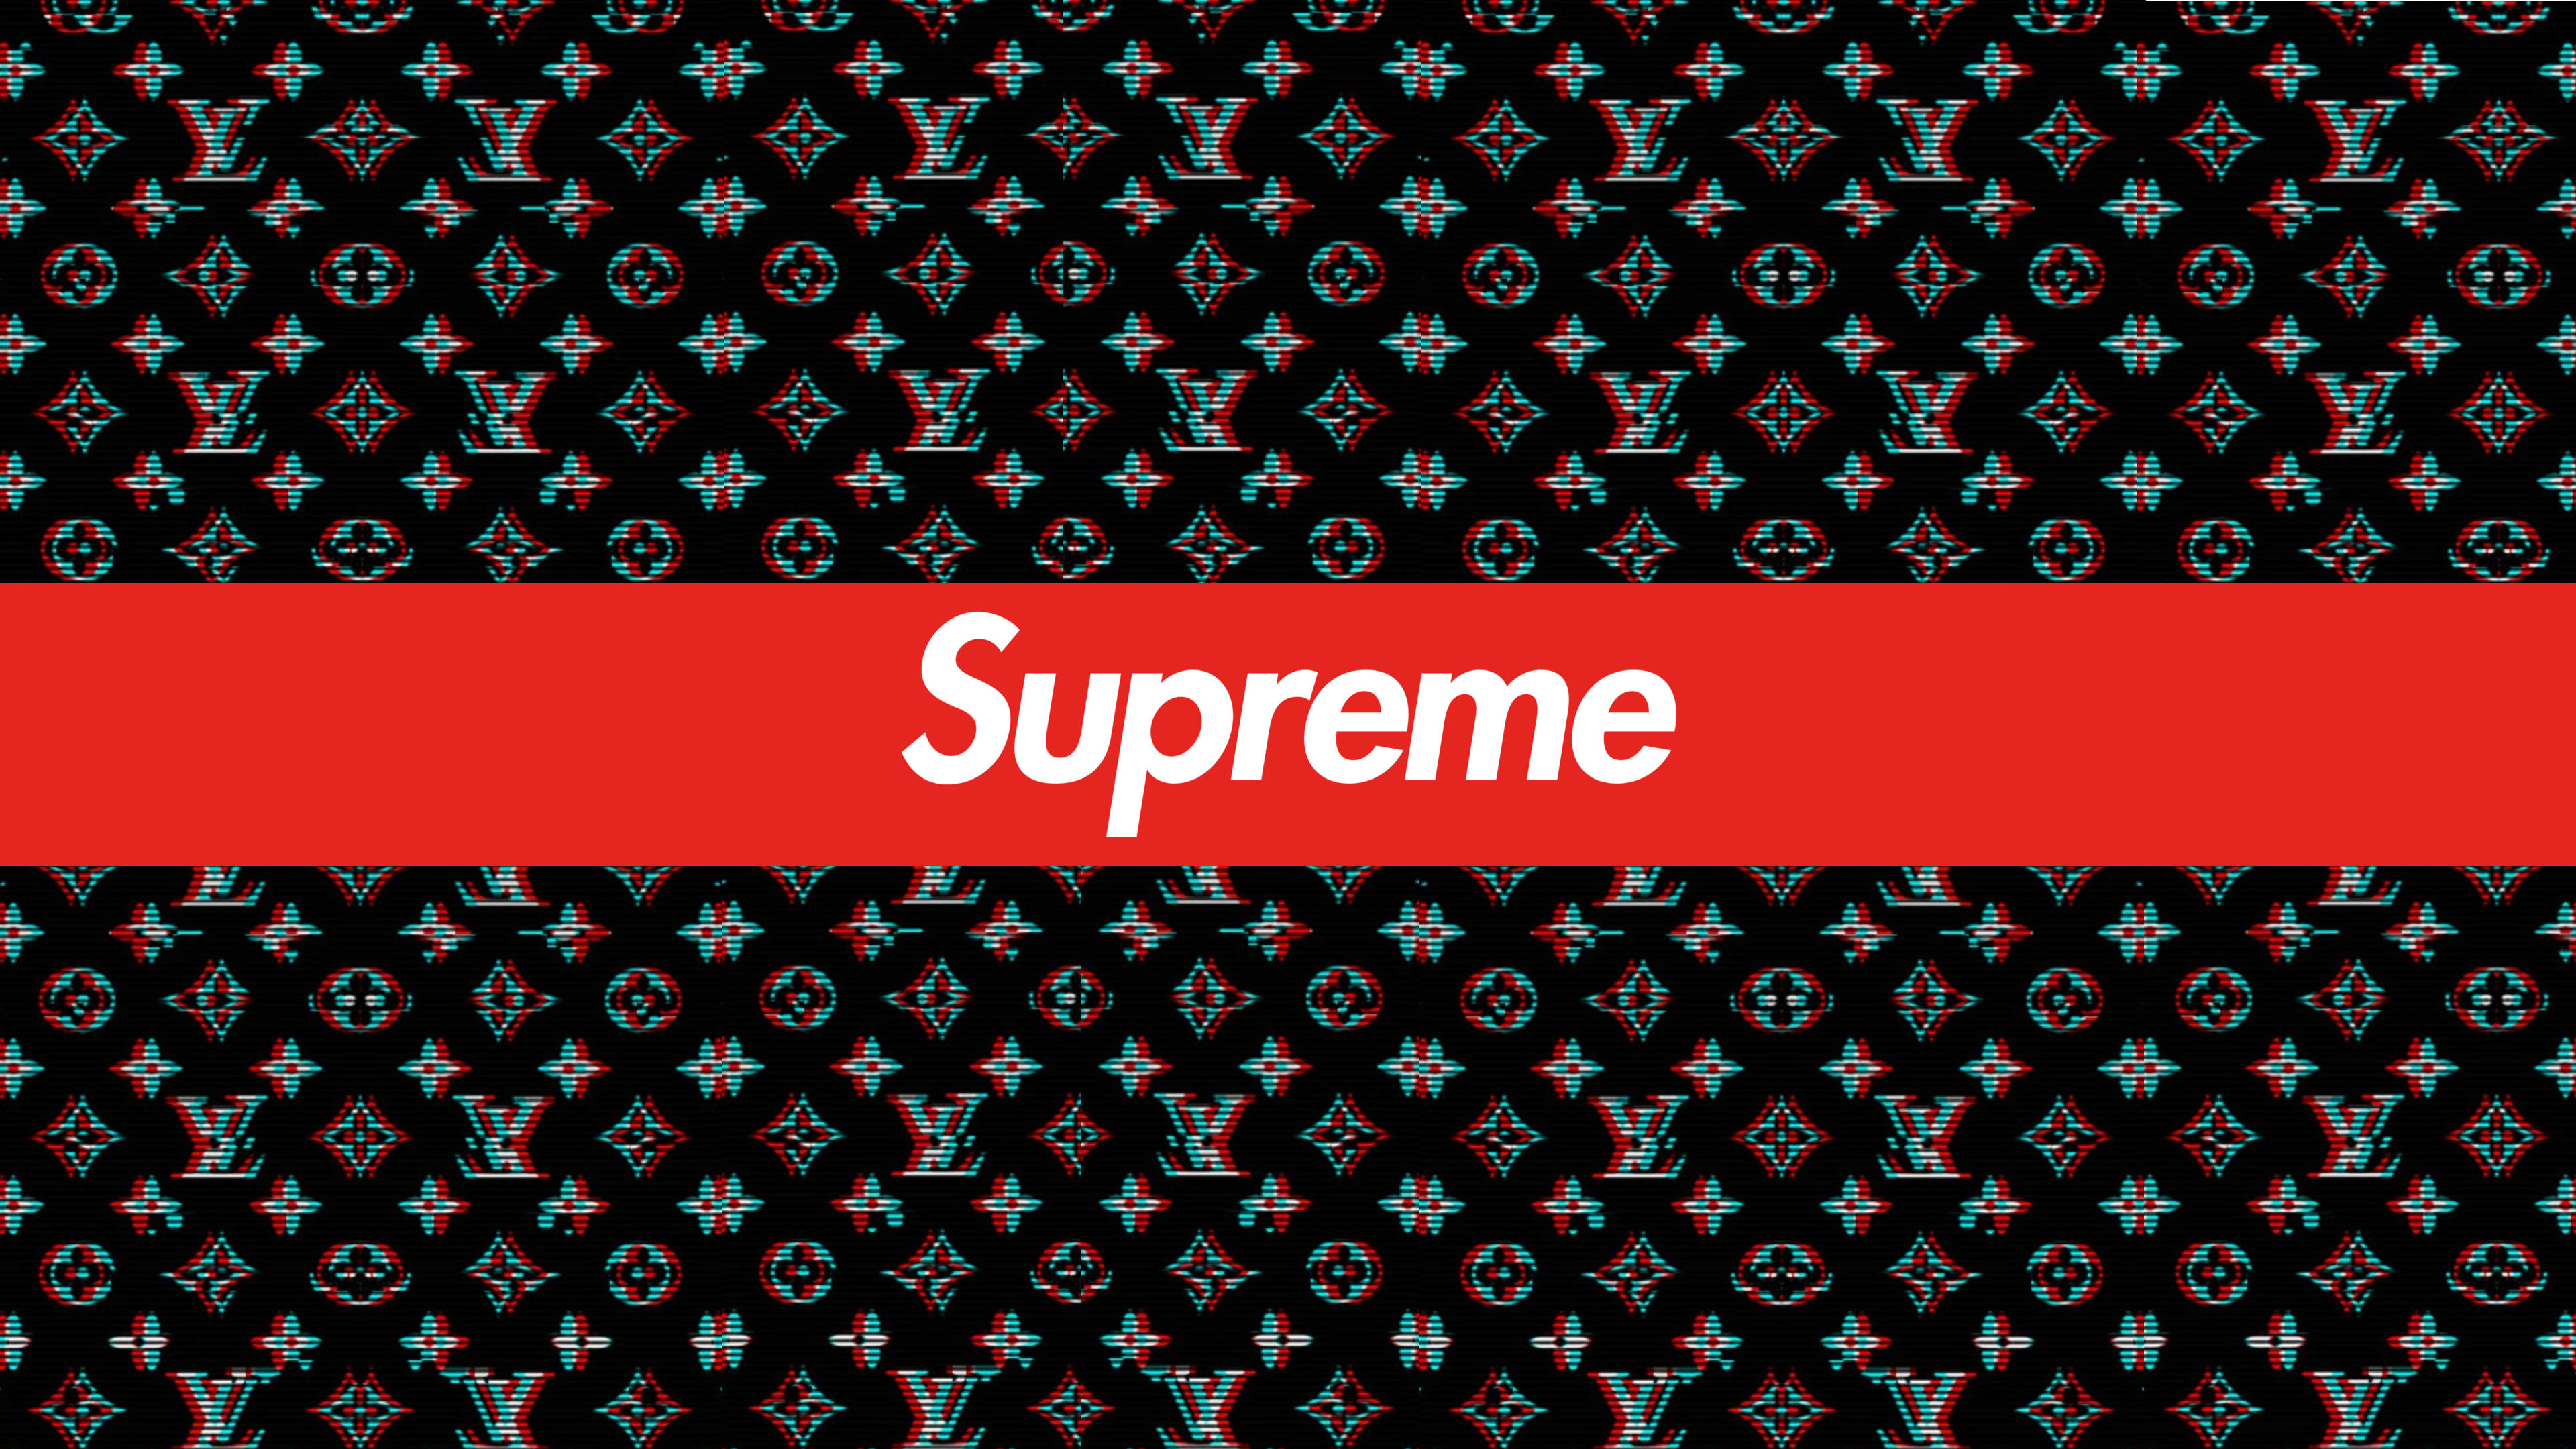 Supreme x Louis Vuitton  Supreme wallpaper, Supreme iphone wallpaper,  Hypebeast wallpaper